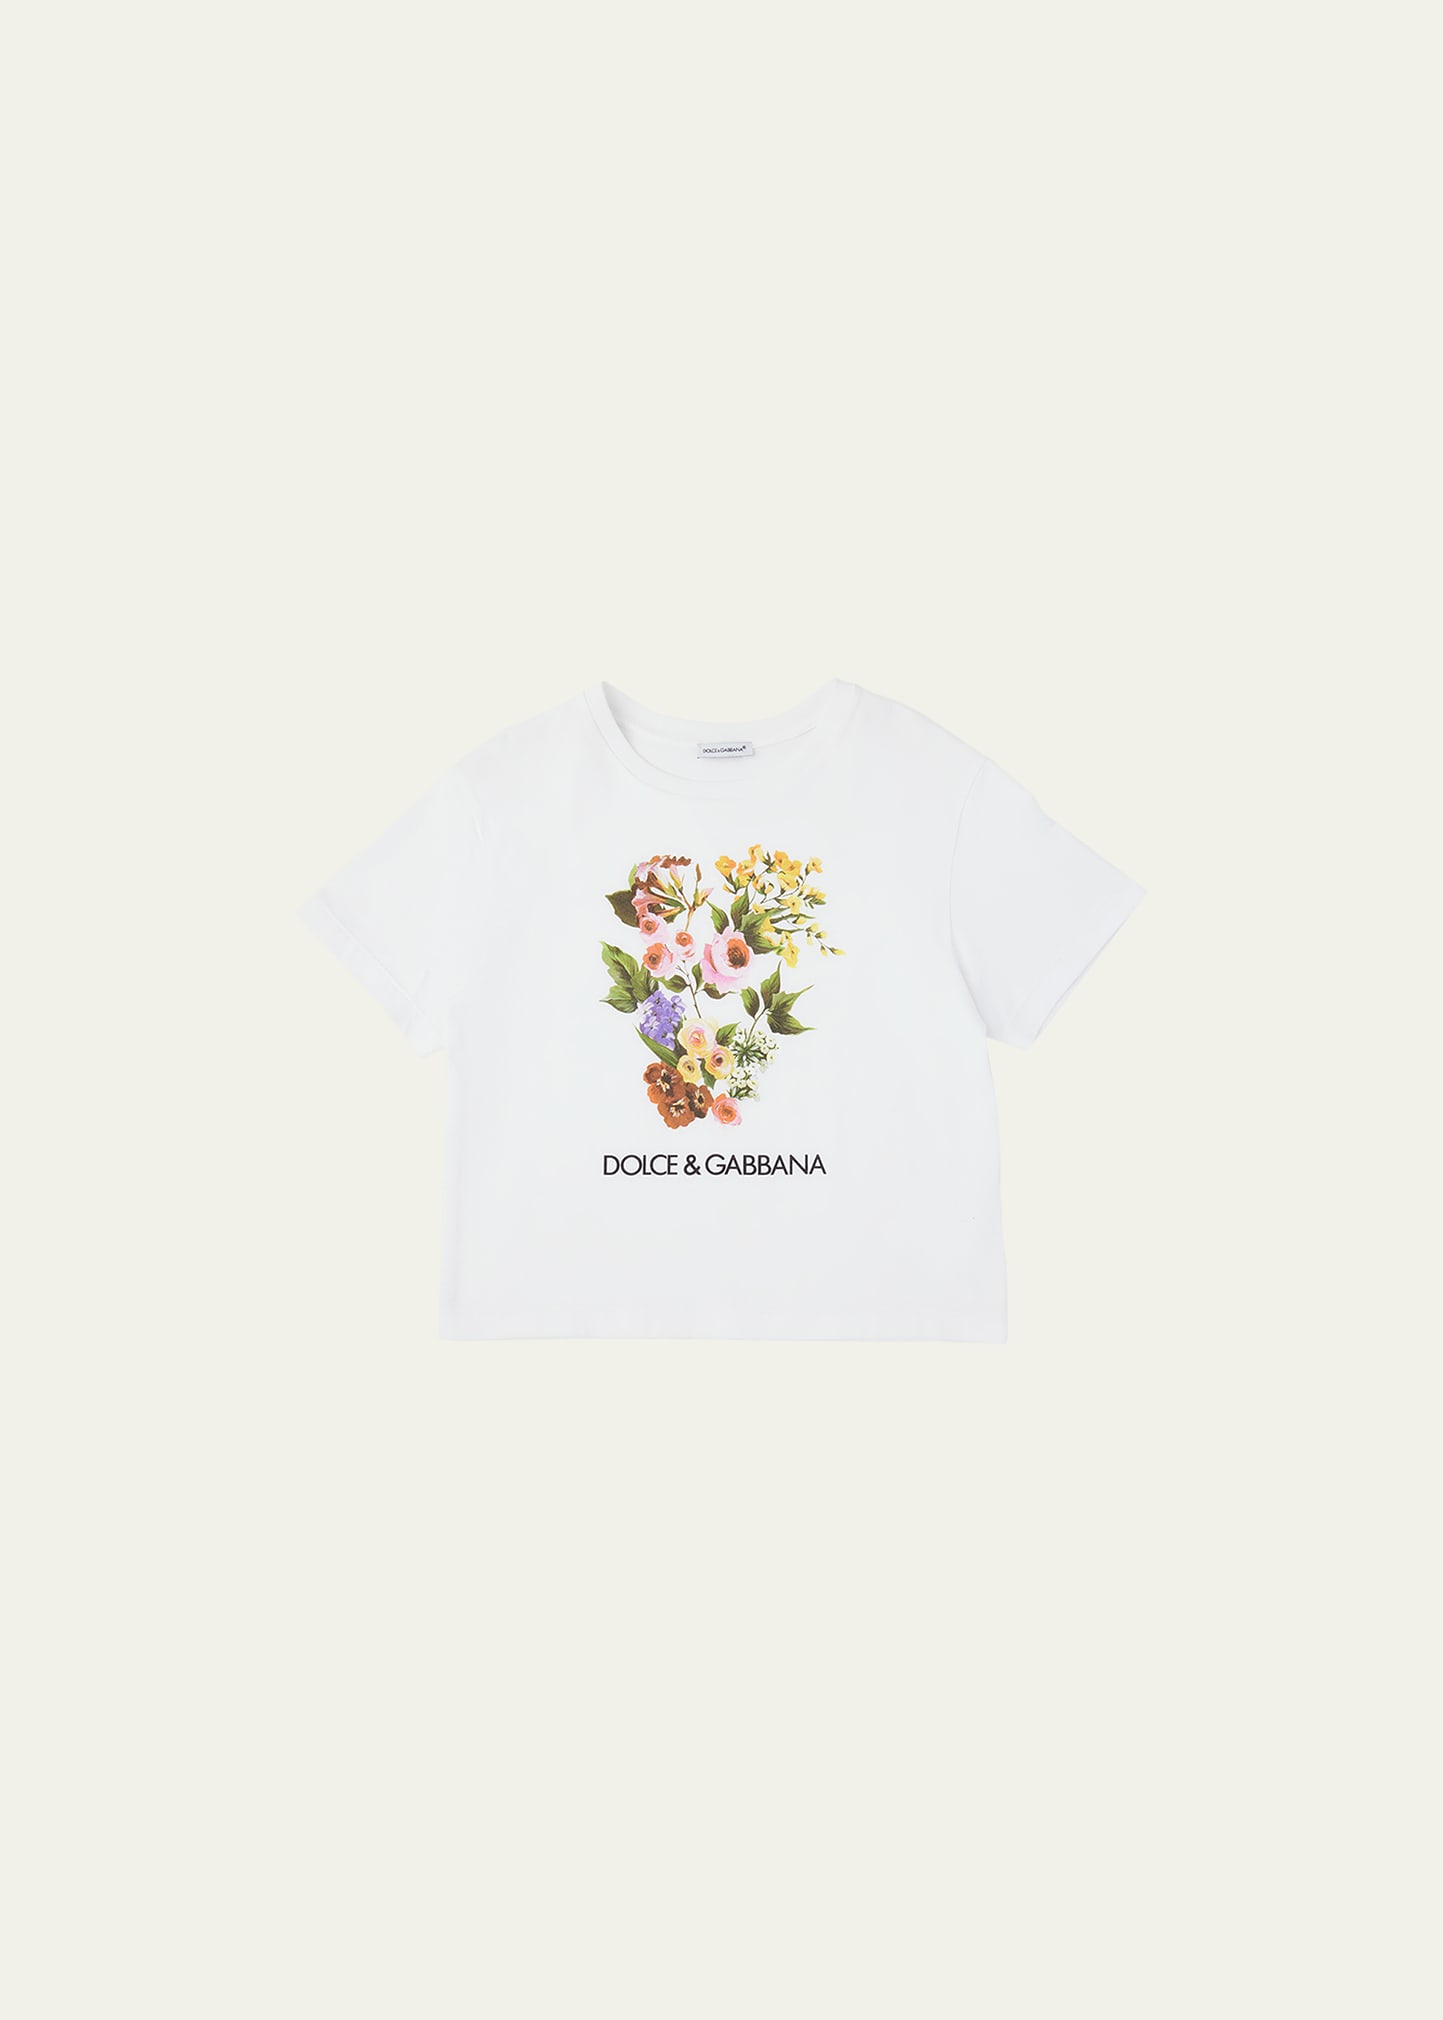 Dolce & Gabbana Kids' Girl's Flower Power Short-sleeve Cotton T-shirt In Bianco Ottico Wht